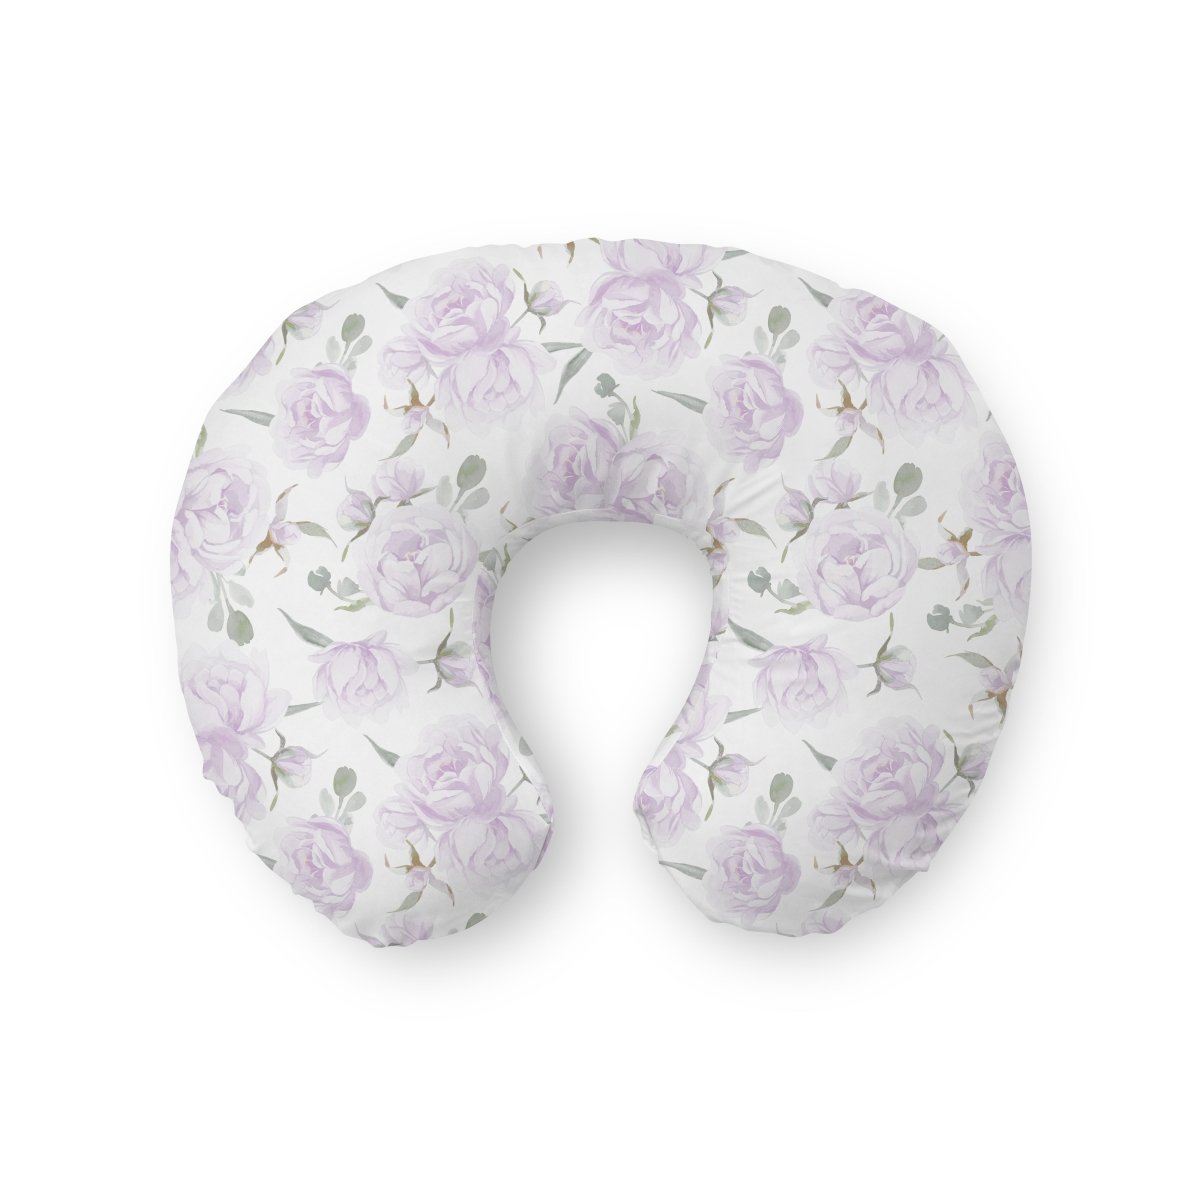 Lovely Lavender Nursing Pillow Cover - gender_girl, Lovely Lavender, Theme_Floral